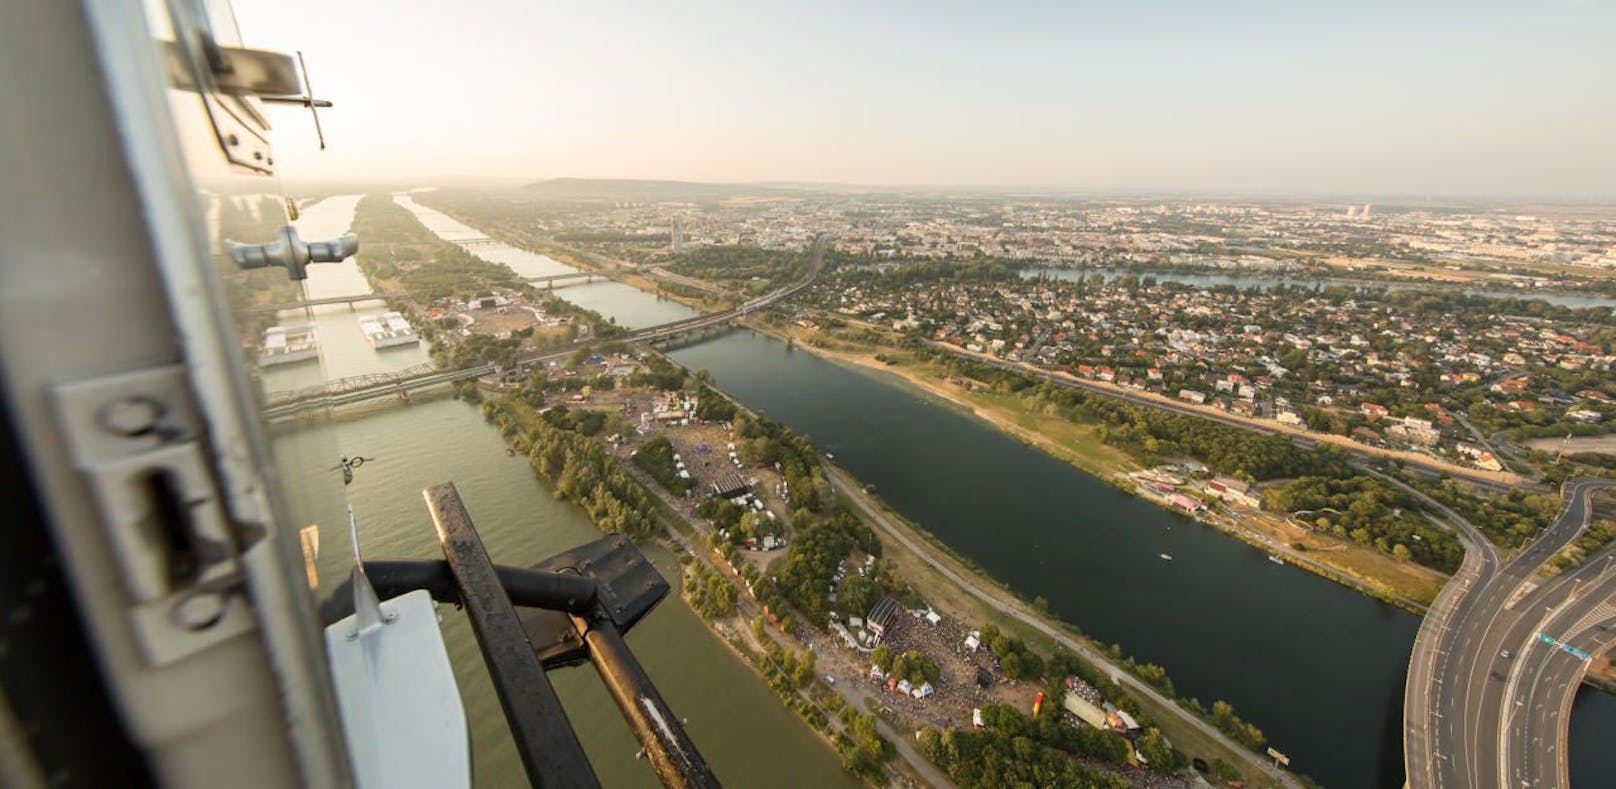 Damit die Donauinsel sauber bleibt, polieren Freiwillige am Wochenende das grüne Juwel im Herzen Wiens auf!